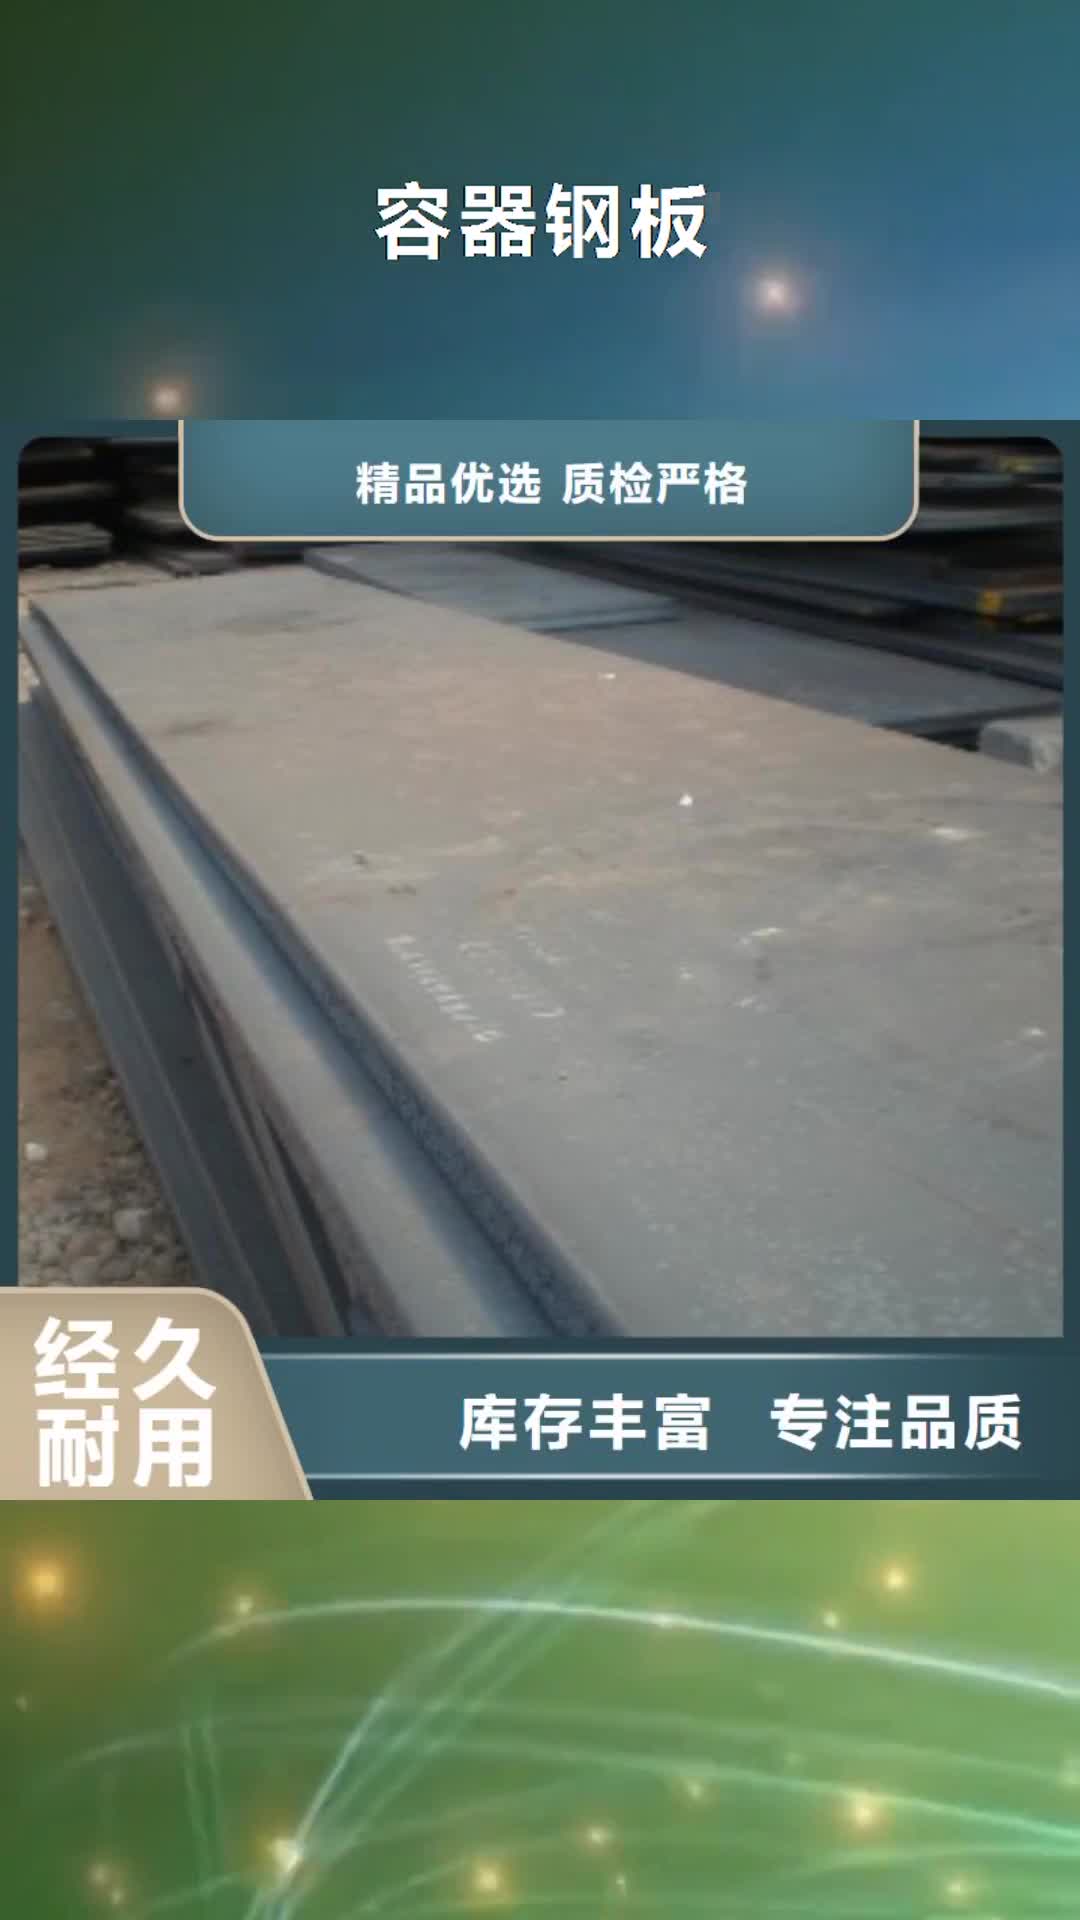 江门 容器钢板,【耐候板】支持大批量采购